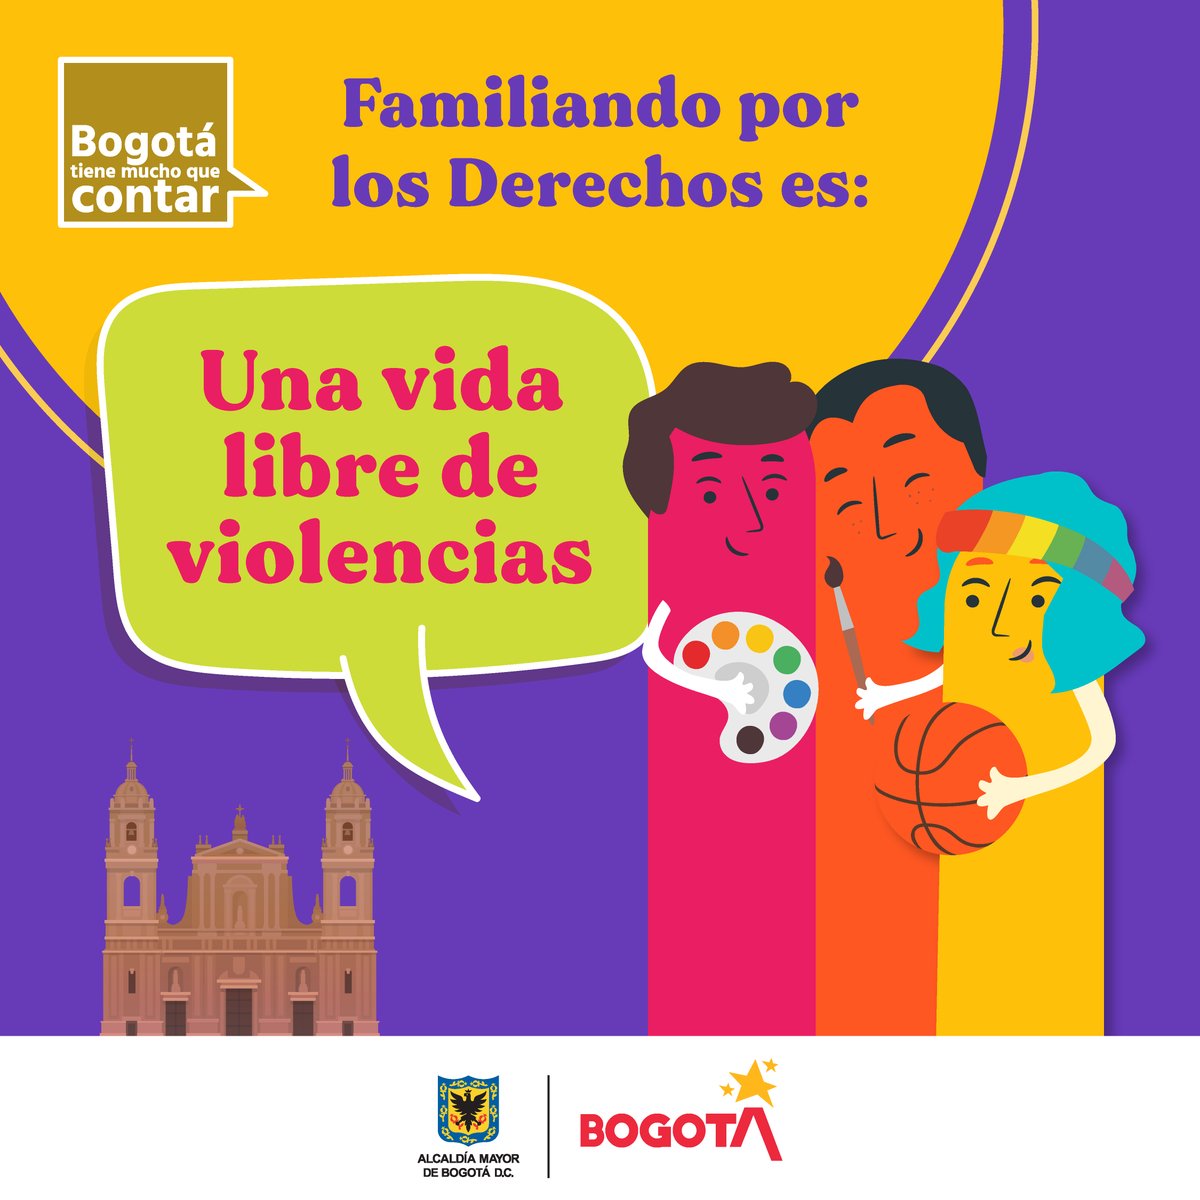 Normalicemos actos de servicio y amor sin violencia

La armonía en las familias de Bogotá es fundamental para que en el día a día nos cuidemos con afecto, factores que inciden en su libertad, integridad y salud física y mental.

#SacaLoMejorDeTi y demuestra que el cambio eres tú